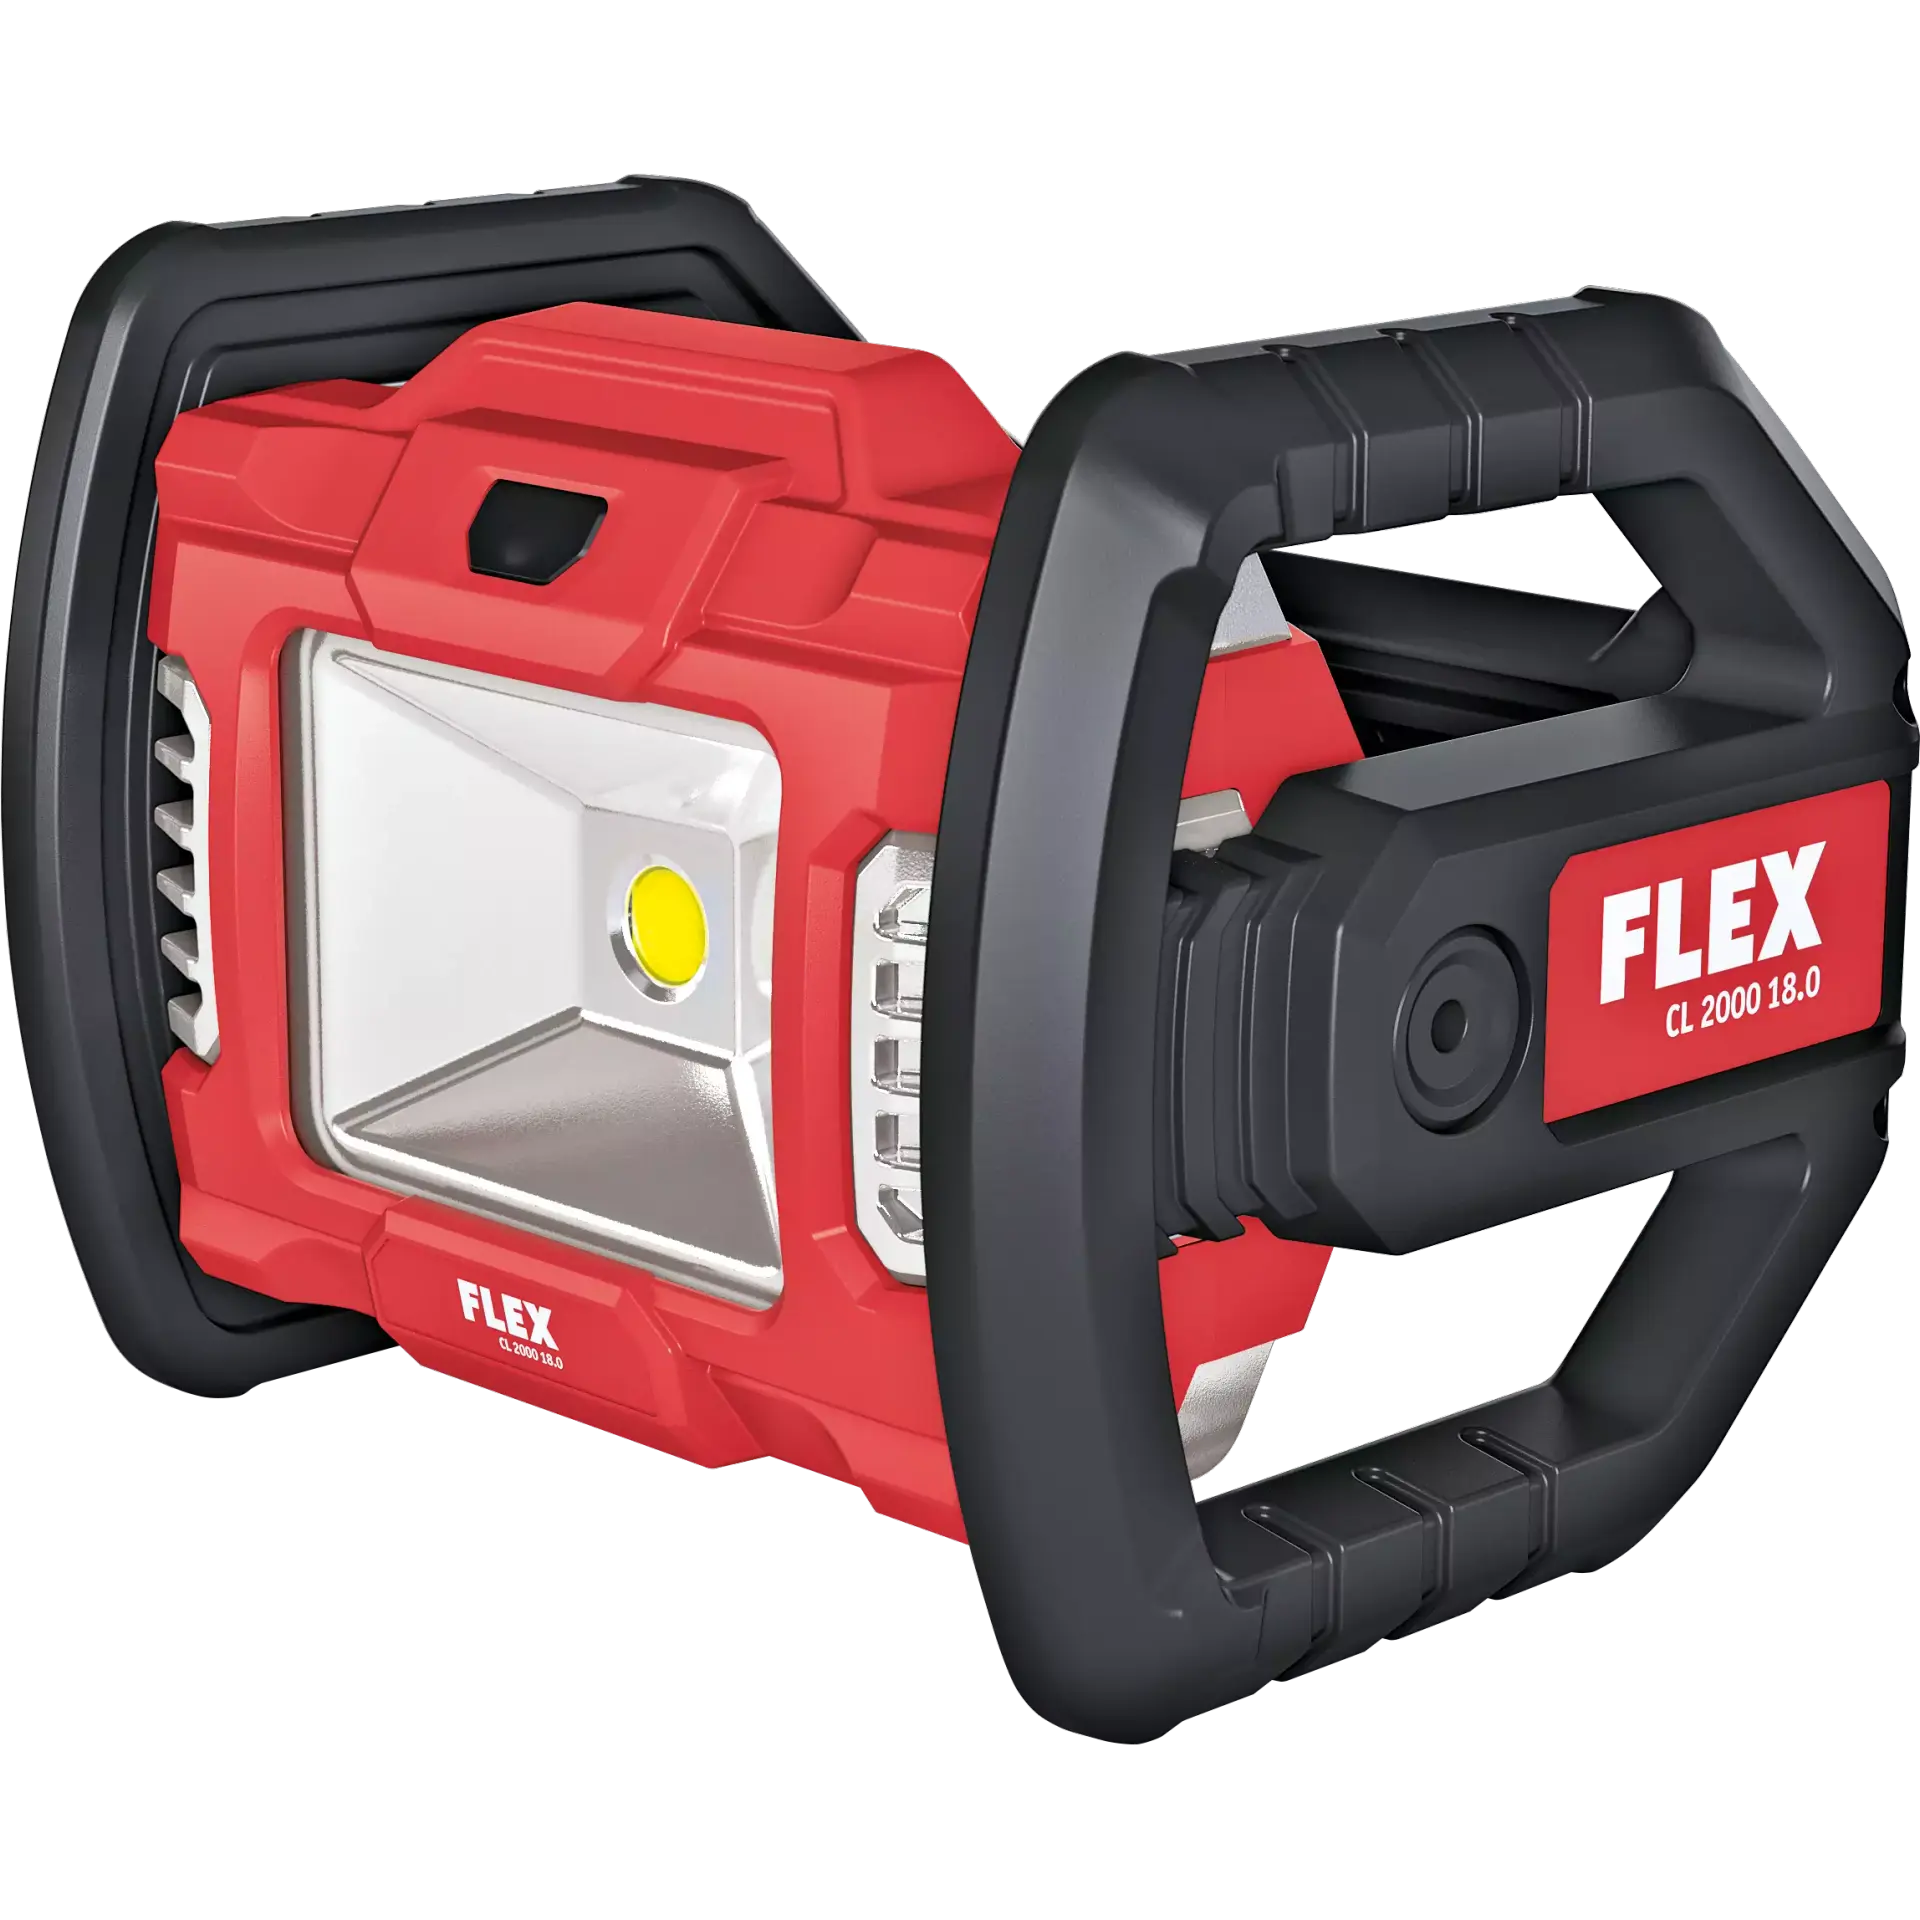 FLEX PROTON フレックス プロトン コードレス LEDライト (バッテリー別売り) FLEX CL2000-18.0-EC